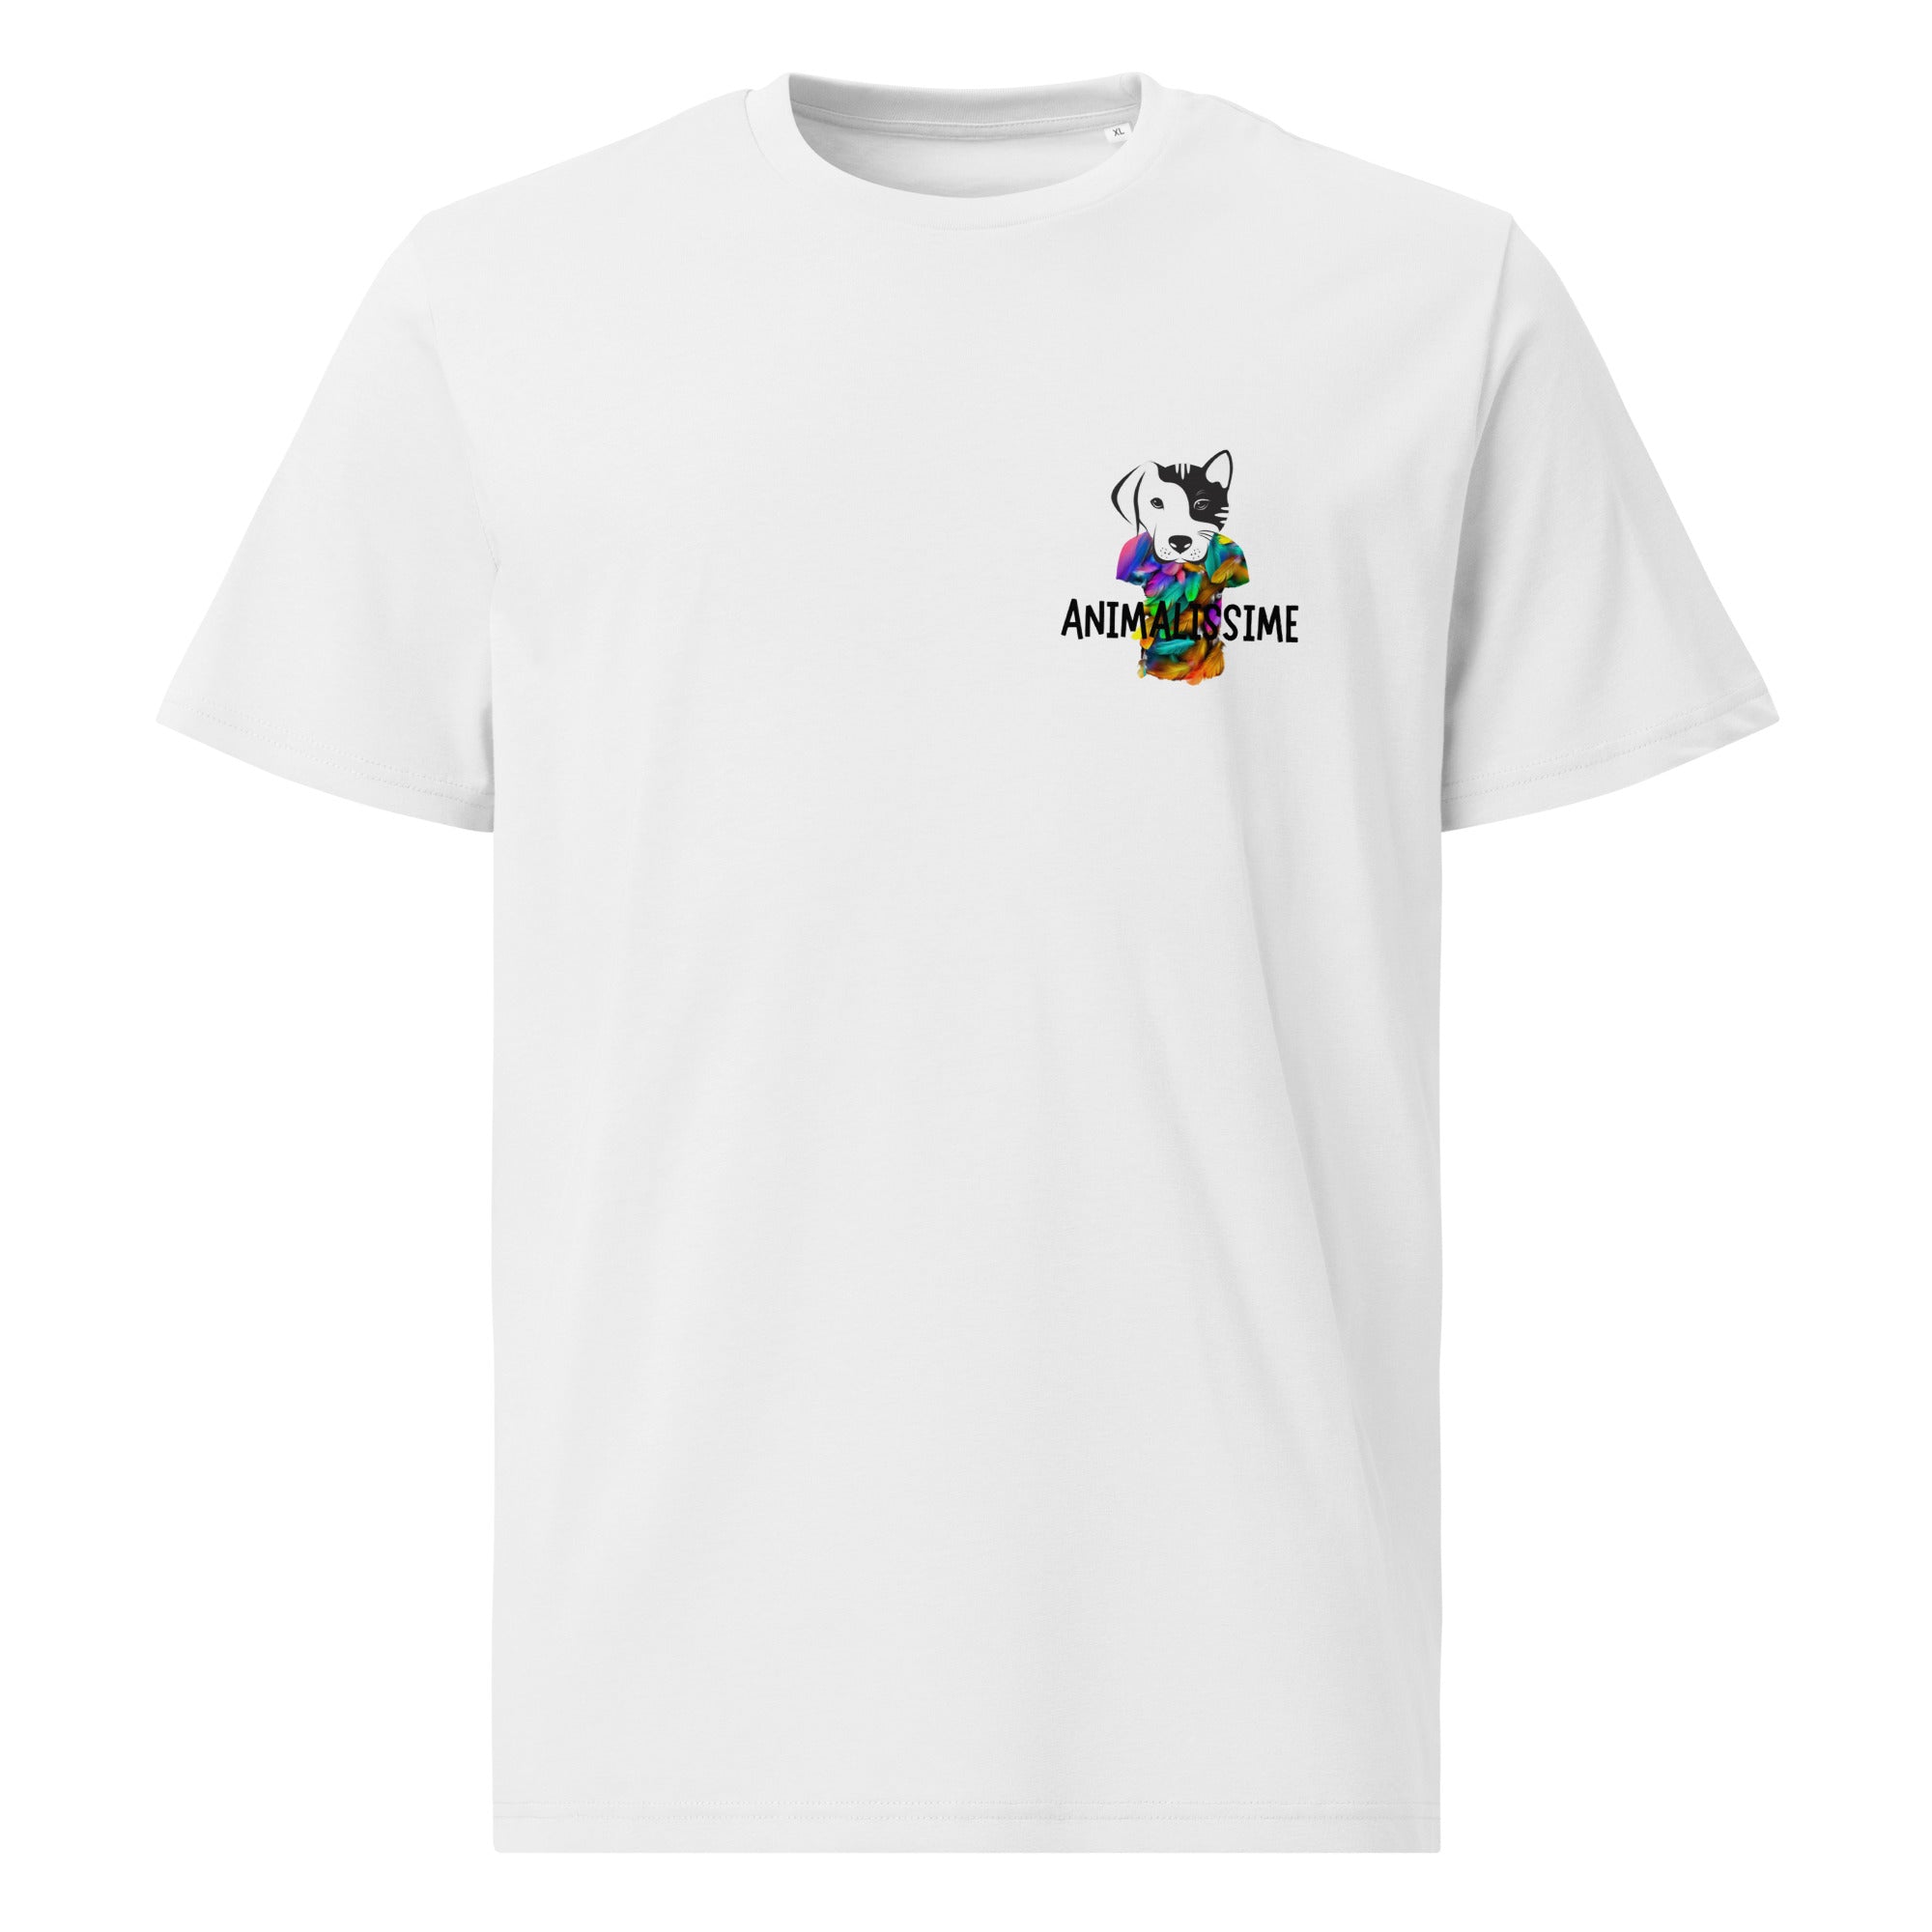 Animalissime - Unisex T-shirt